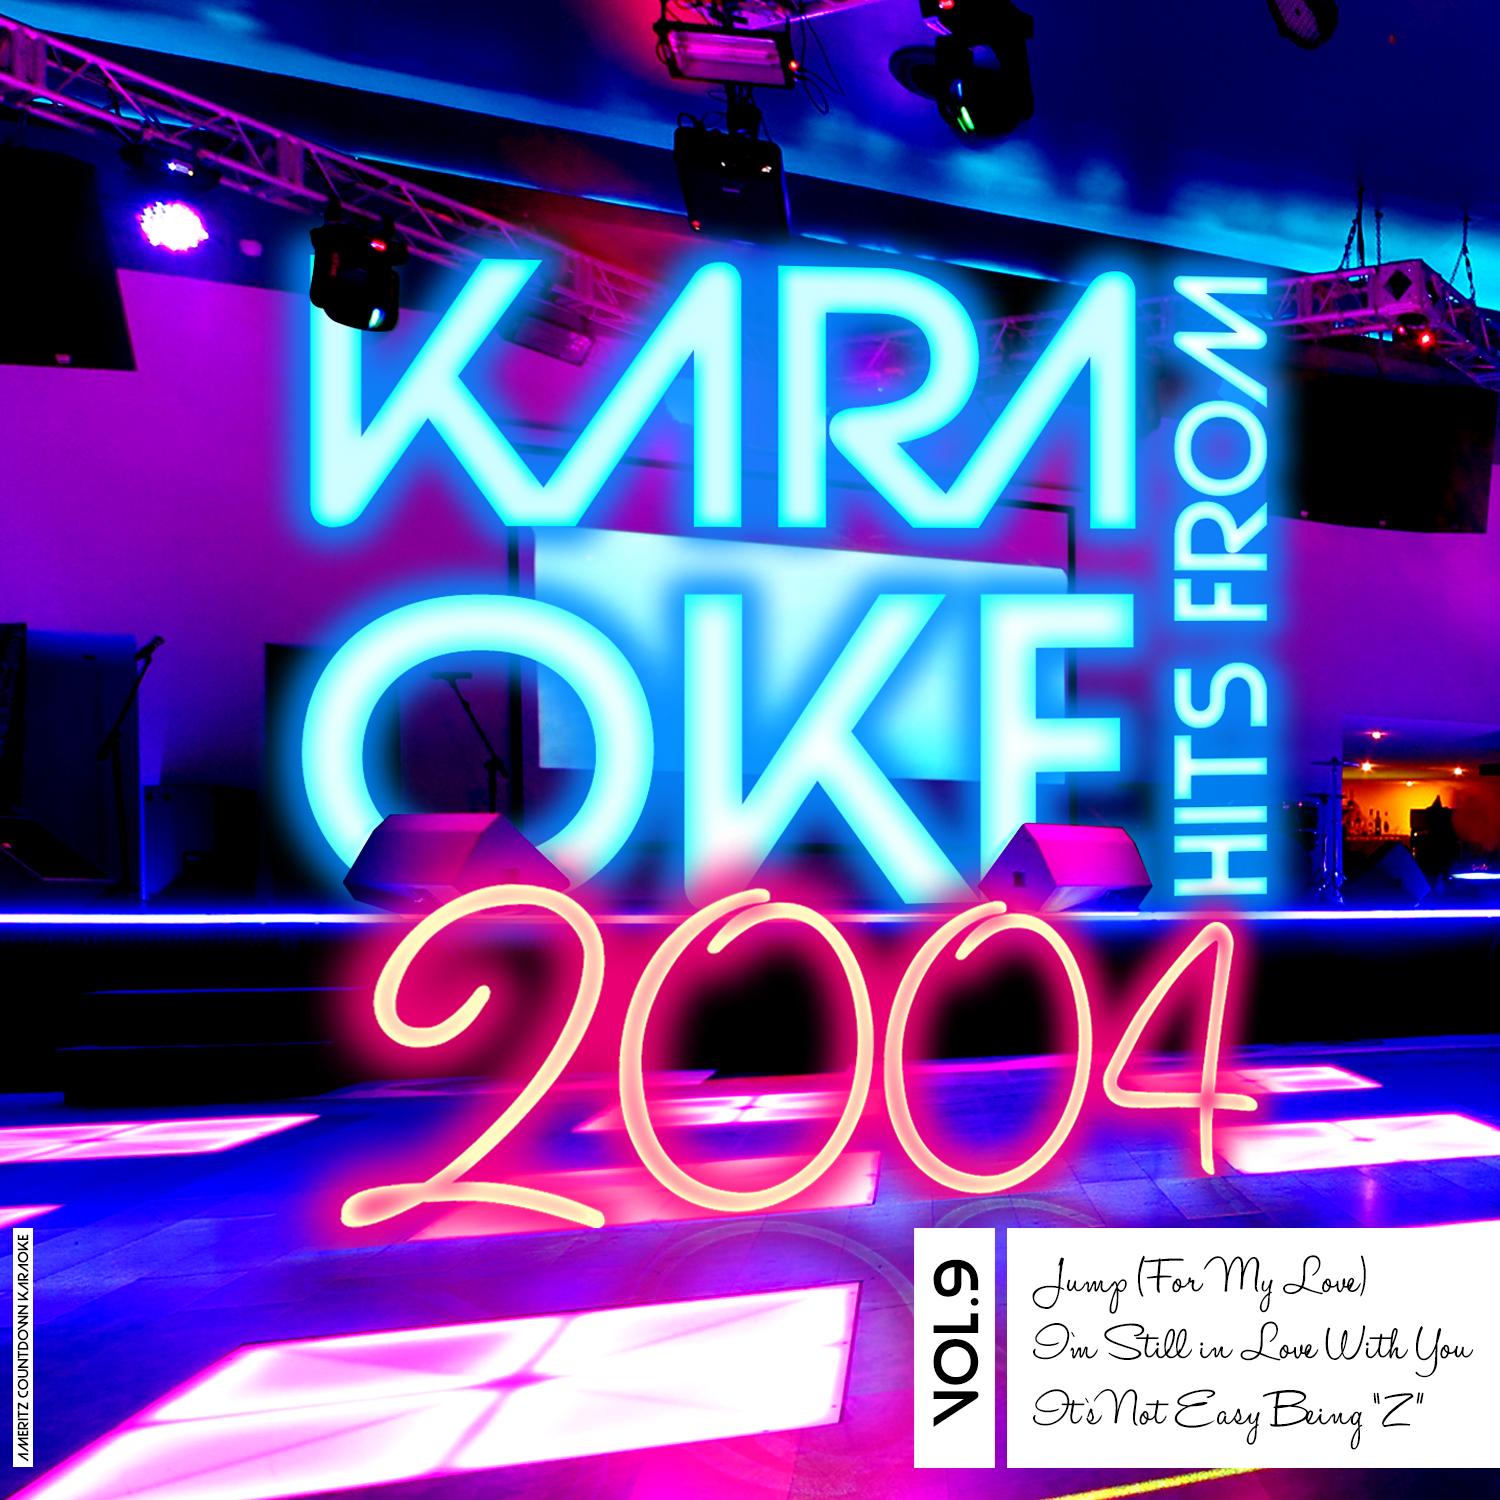 Karaoke Hits from 2004, Vol. 9